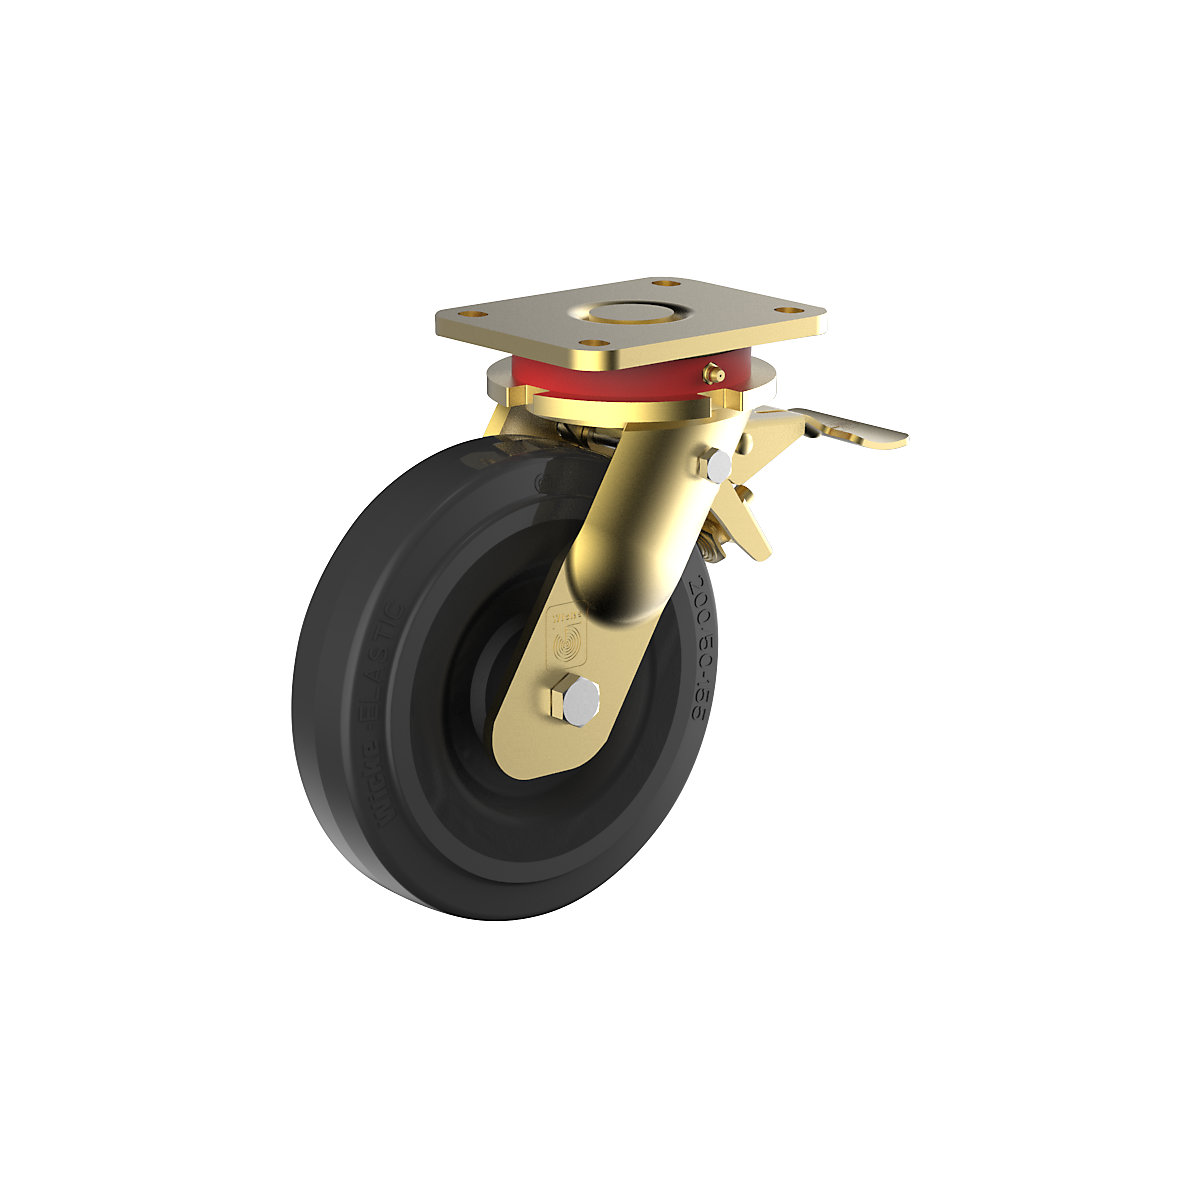 Roda de borracha maciça elástica, corpo em aço, soldada – Wicke, Ø da roda x largura 160 x 50 mm, roda orientável com bloqueio duplo-1